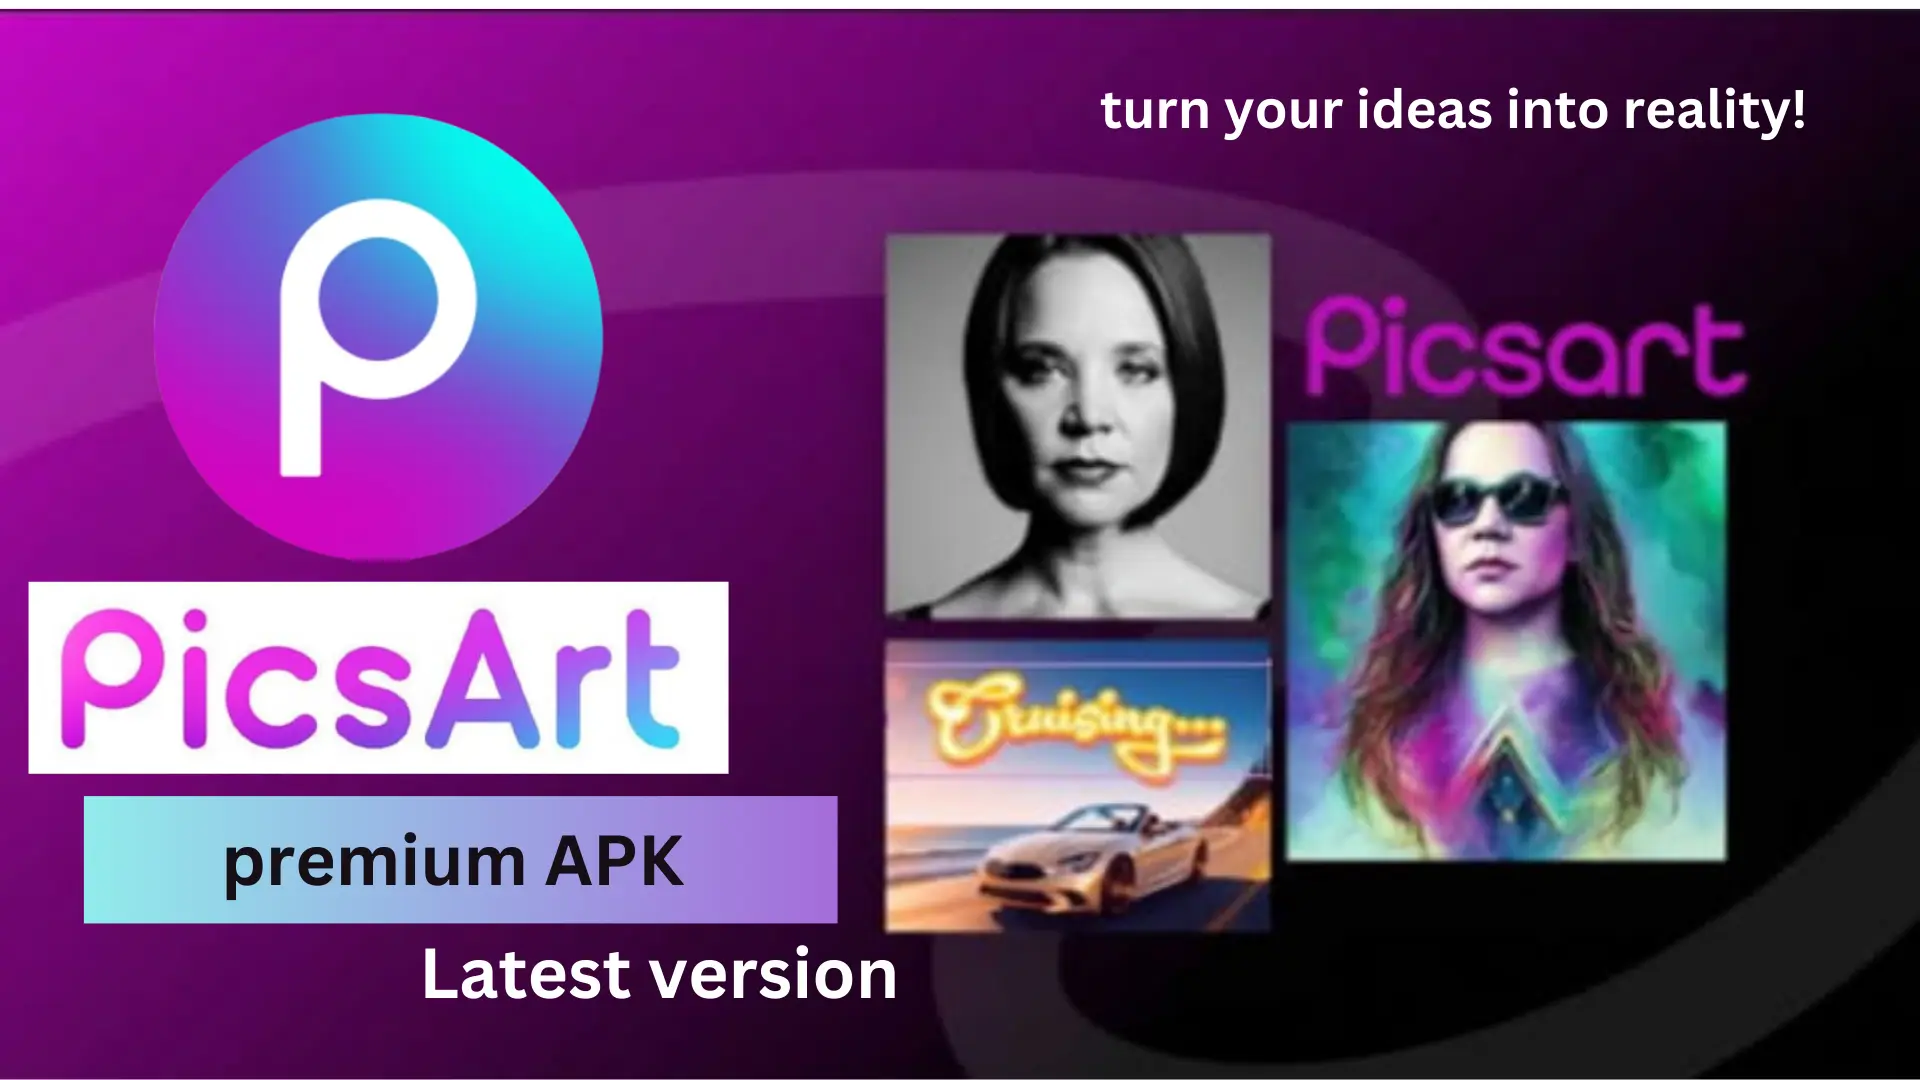 picsart premium apk feature image